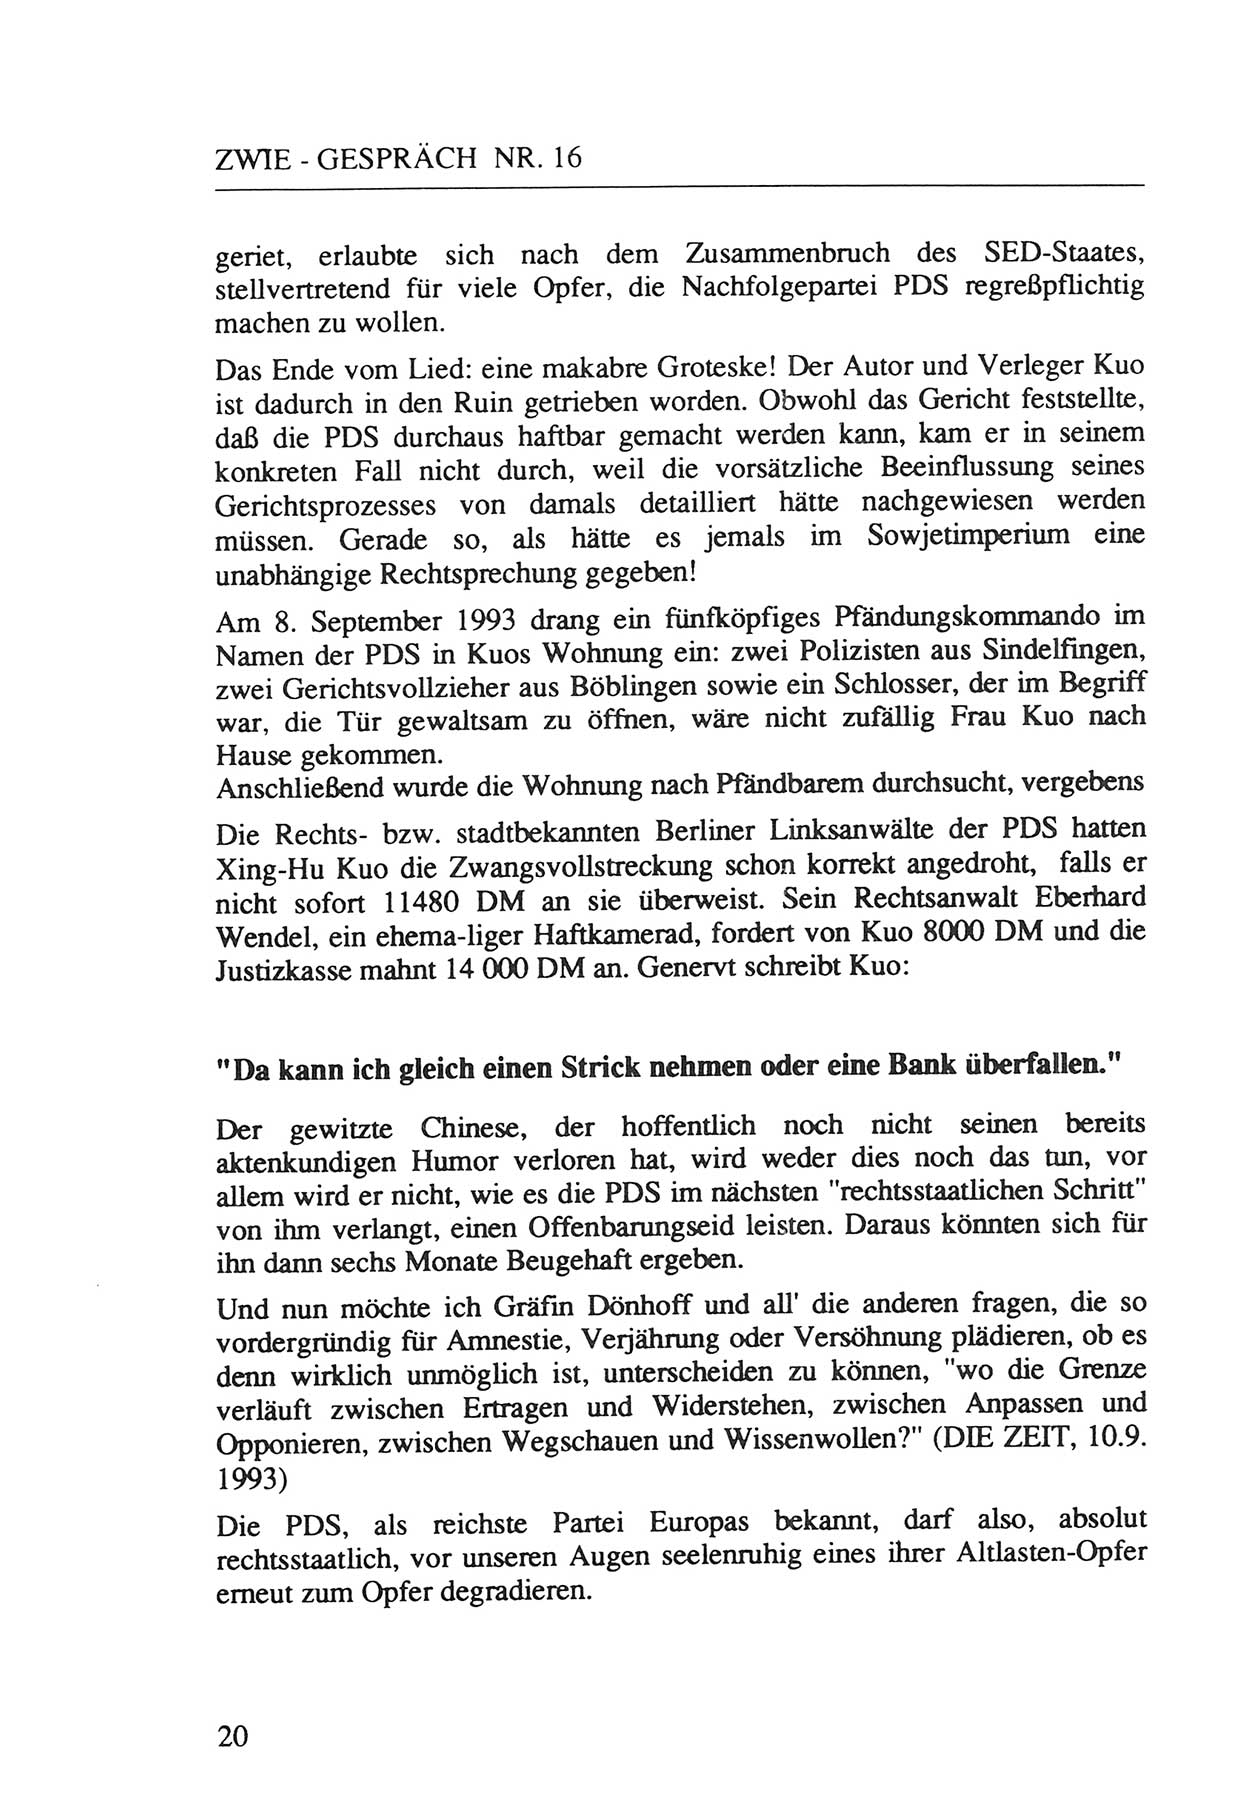 Zwie-Gespräch, Beiträge zur Aufarbeitung der Staatssicherheits-Vergangenheit [Deutsche Demokratische Republik (DDR)], Ausgabe Nr. 16, Berlin 1993, Seite 20 (Zwie-Gespr. Ausg. 16 1993, S. 20)